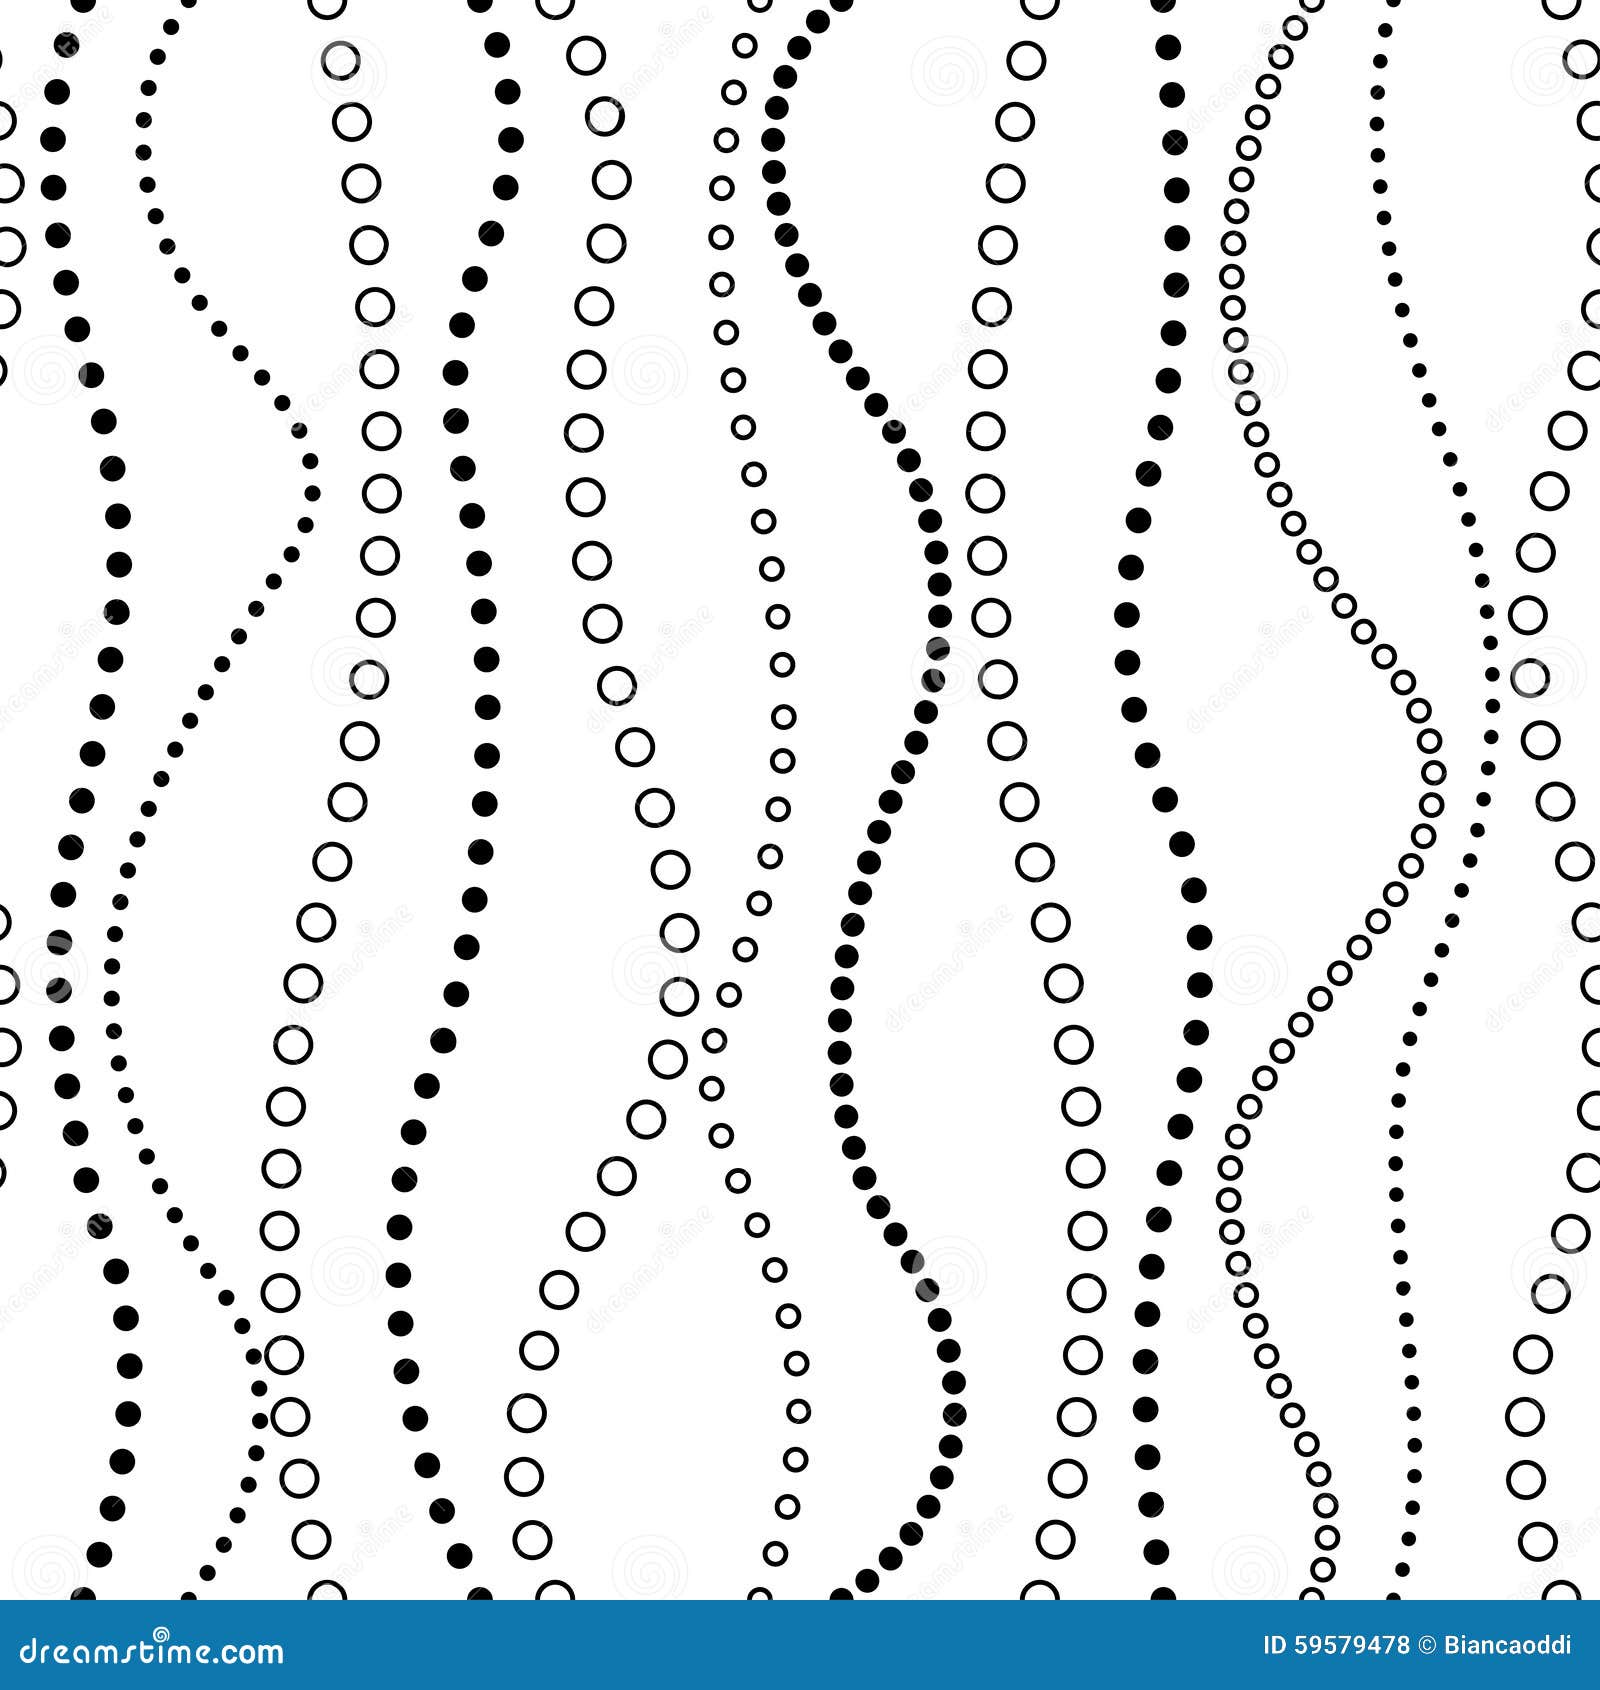 Naadloos golvend patroon De eindeloze textuur kan voor het vullen van om het even welke contouren, behang, Web-pagina achtergrond, kaarten, giftomslag, oppervlaktetexturen worden gebruikt